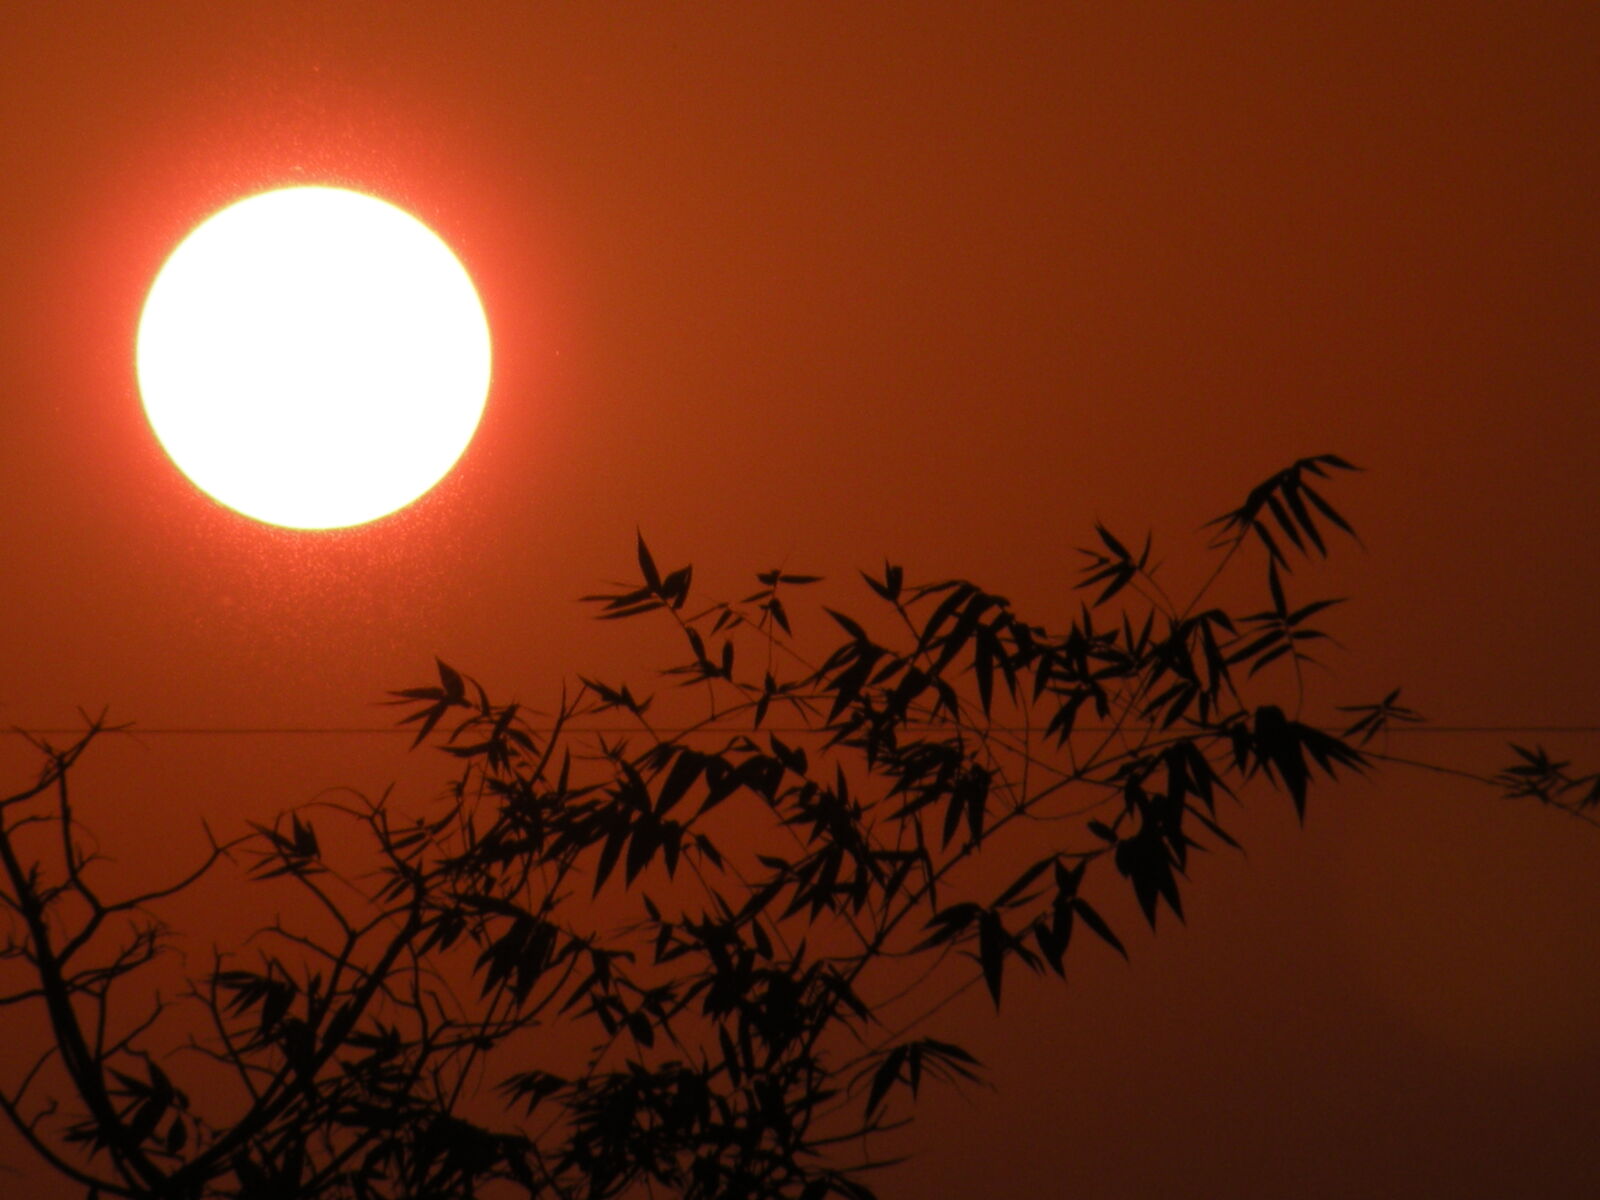 Nikon Coolpix P80 sample photo. Sun, sunset photography